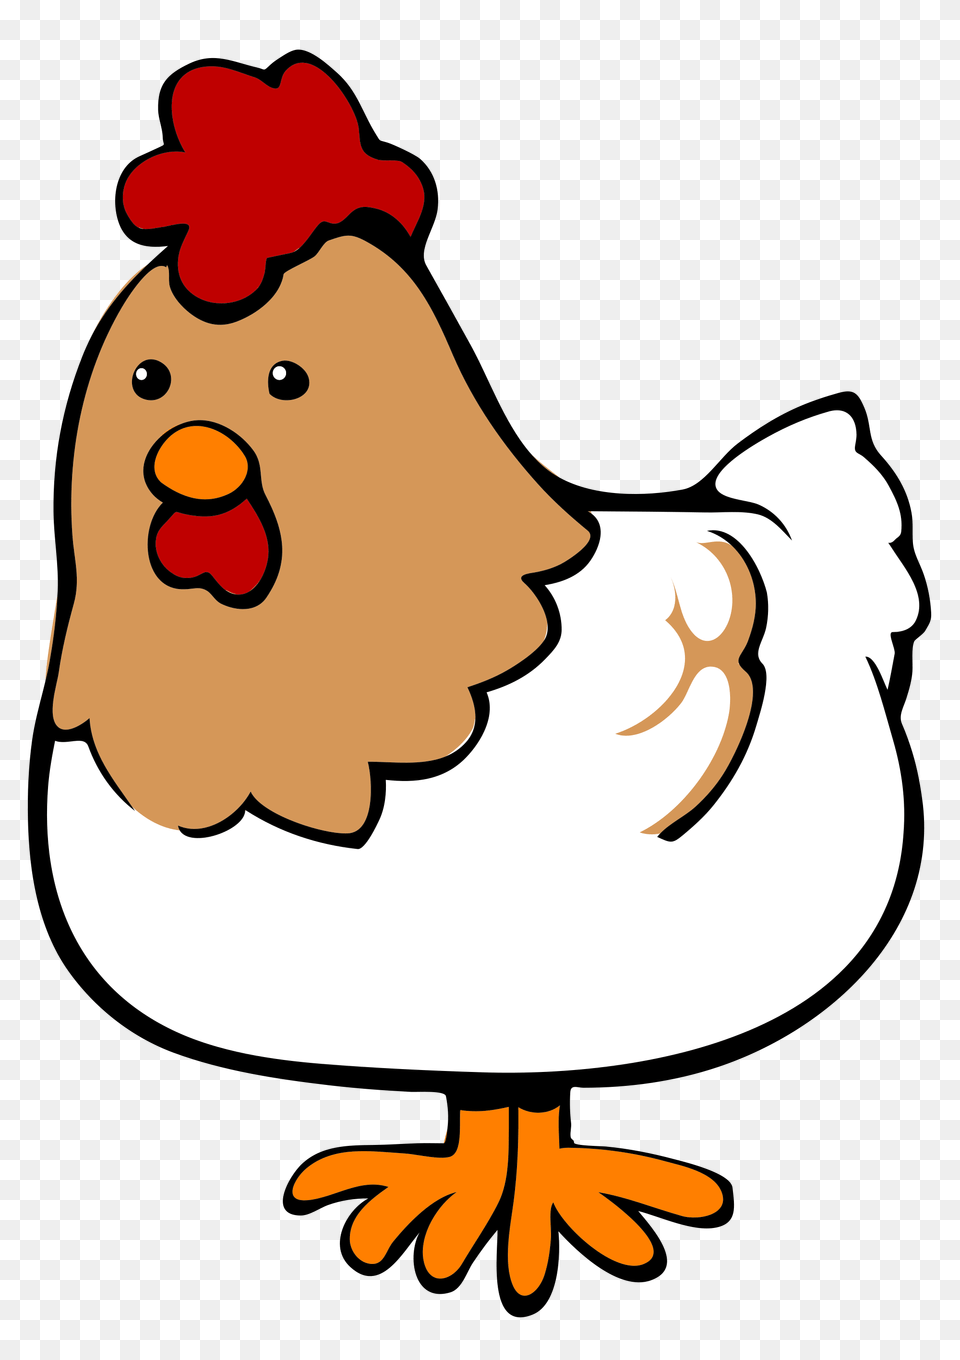 A Evolution Of The Chicken Butt Joke, Animal, Hen, Fowl, Bird Free Png